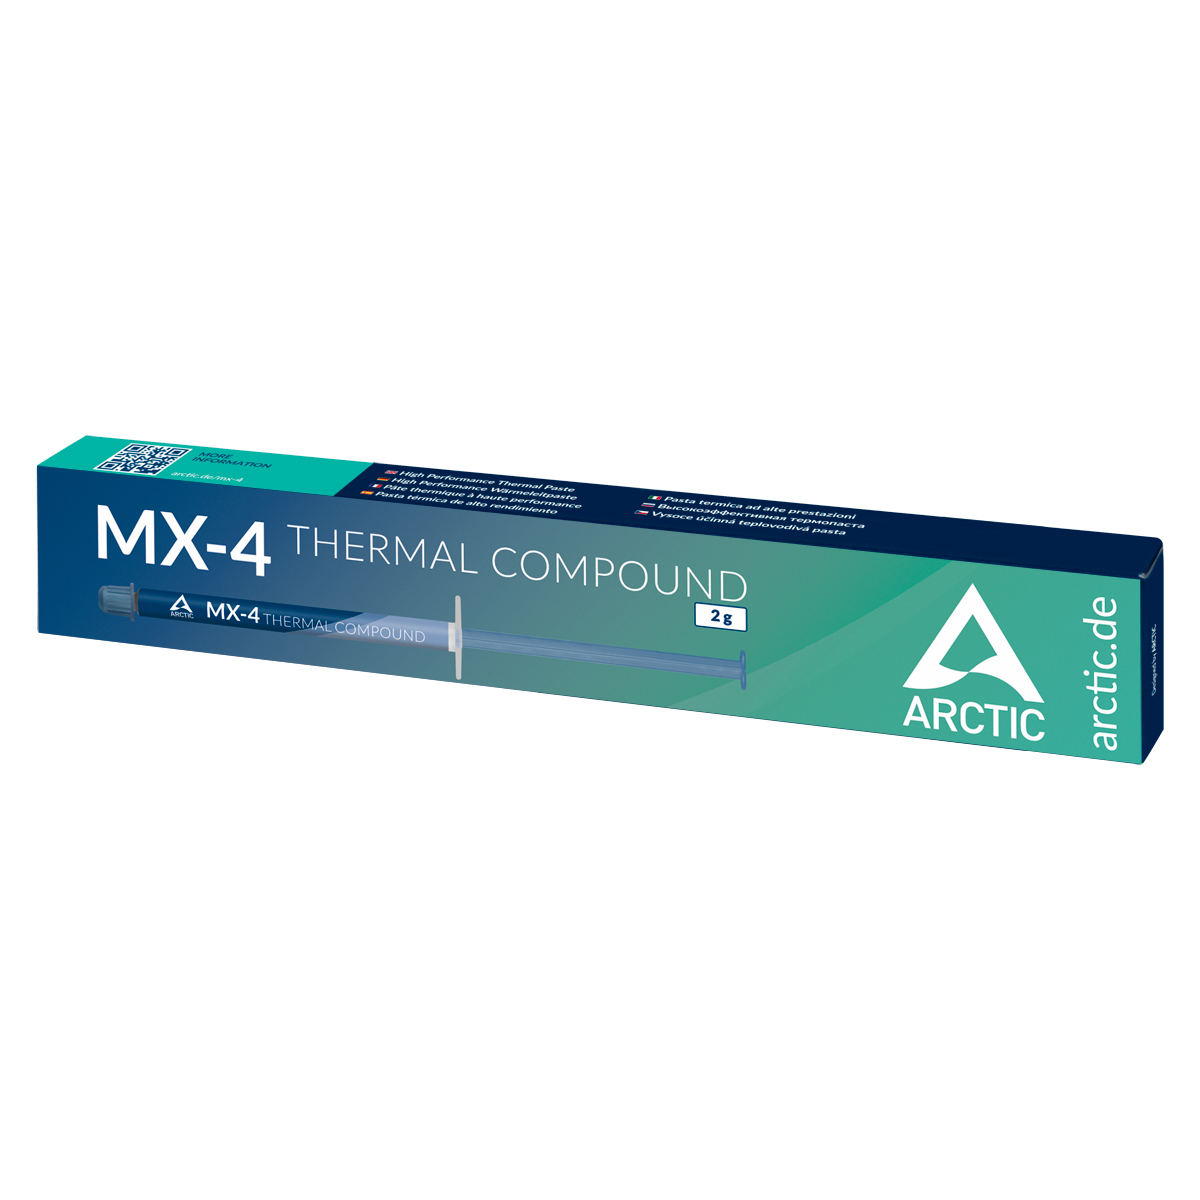 Arctic MX-4 (2 grammes) - Pasta térmica - LDLC